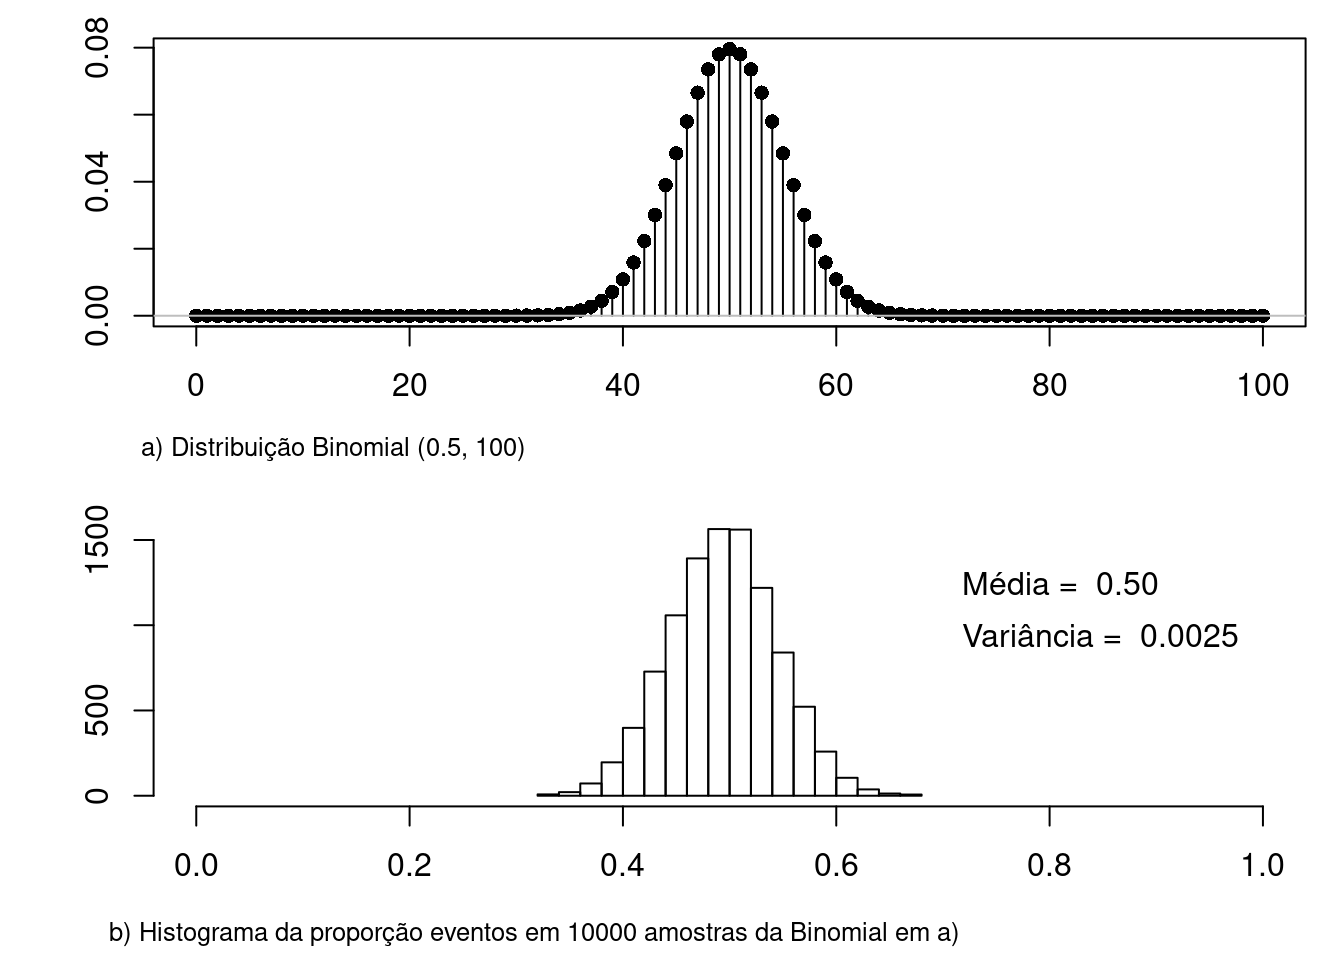 a) gráfico da distribuição binomial para p = 0,5 e n = 100; b) histograma da proporção de eventos em 10000 amostras extraídas da distribuição binomial de a). A média da proporção de eventos foi de 0,50 e a variância 0,0025, sendo os valores teóricos iguais a 0,5 e 0,0025, respectivamente.